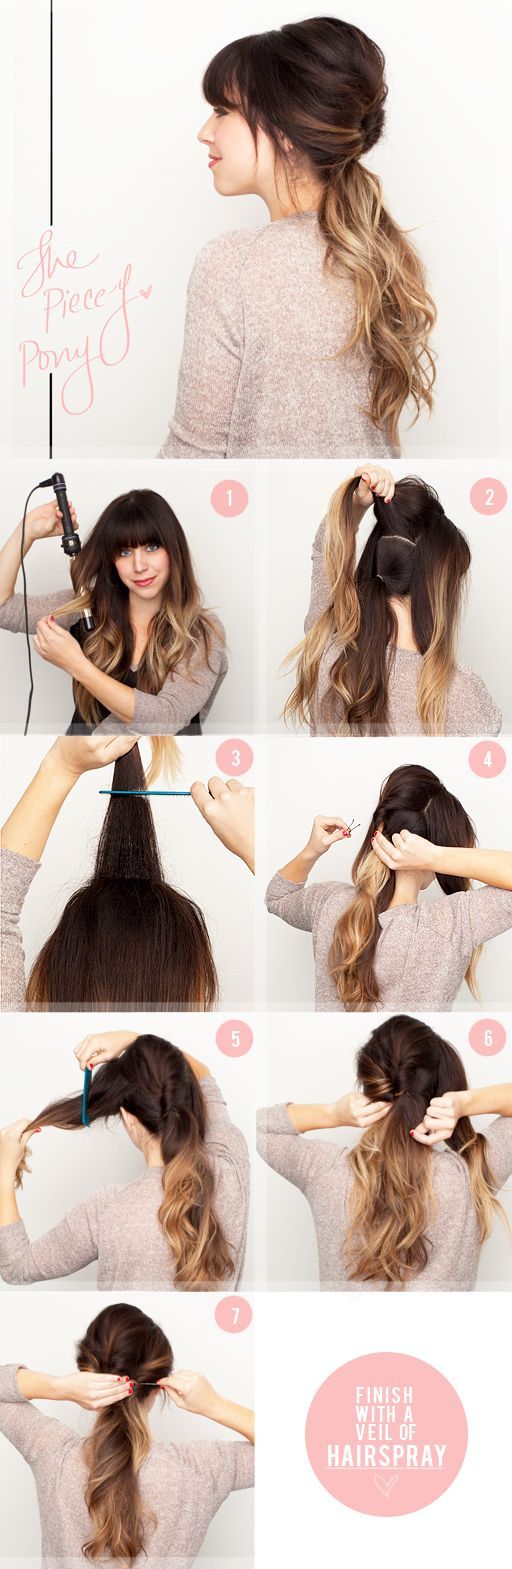 5 DIY Hairstyles